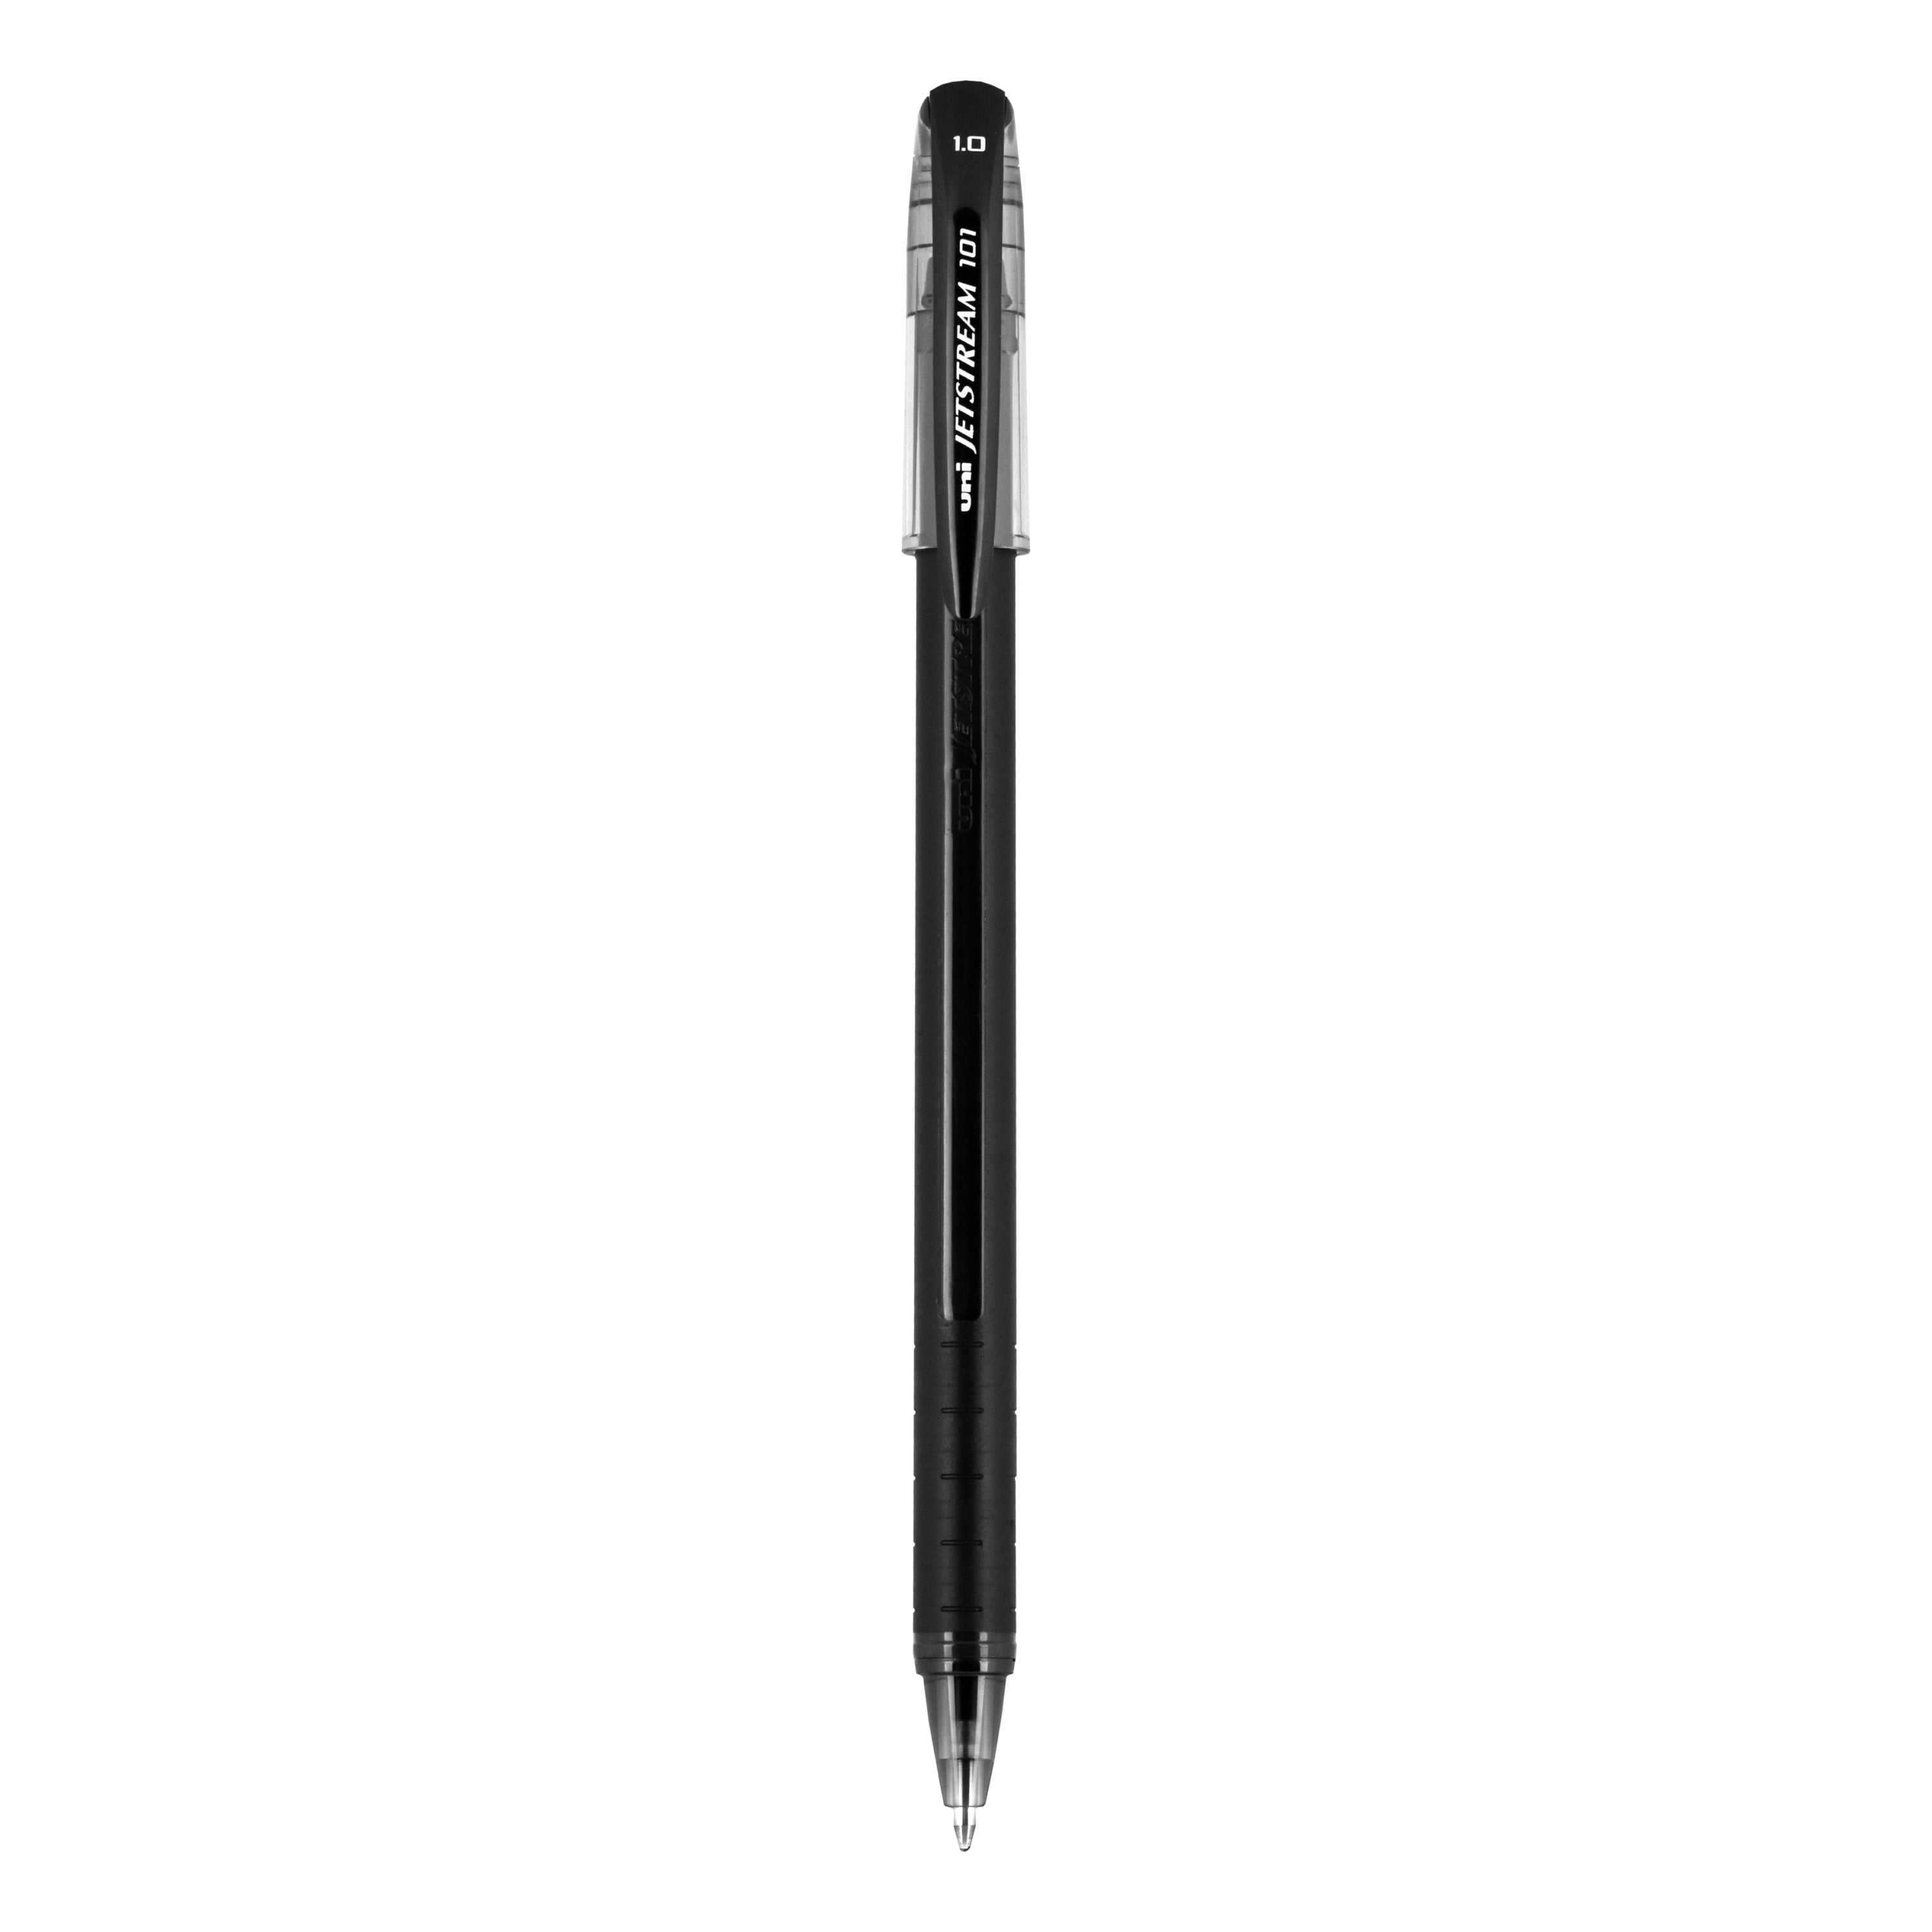 NEW Uniball Jetstream RT Pack of 12 Black 1.0mm Bold Point Rollerball Pen 